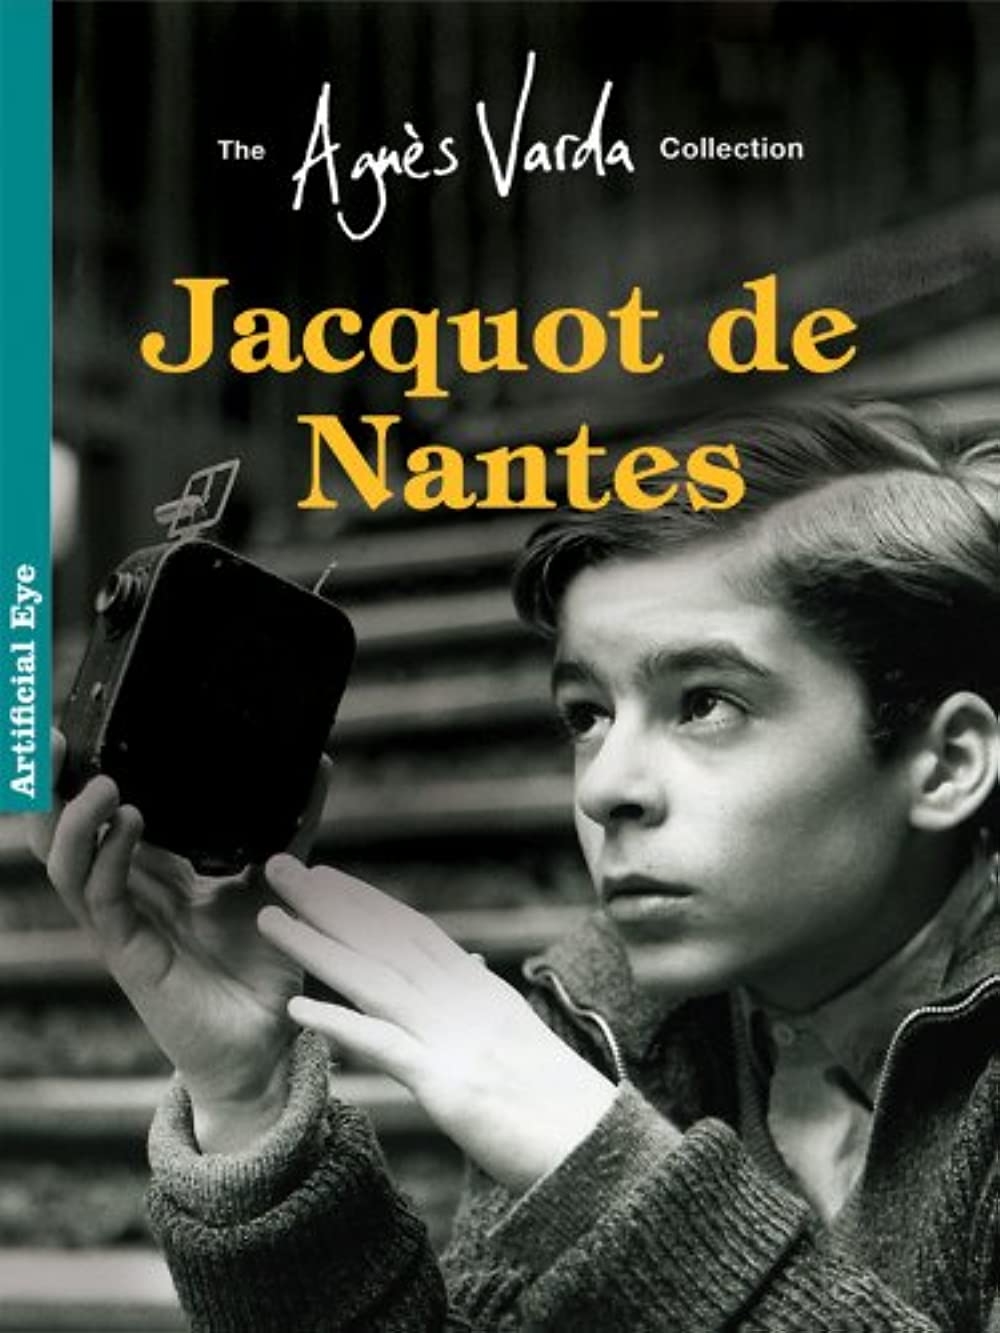 Filmbeschreibung zu Jacquot de Nantes